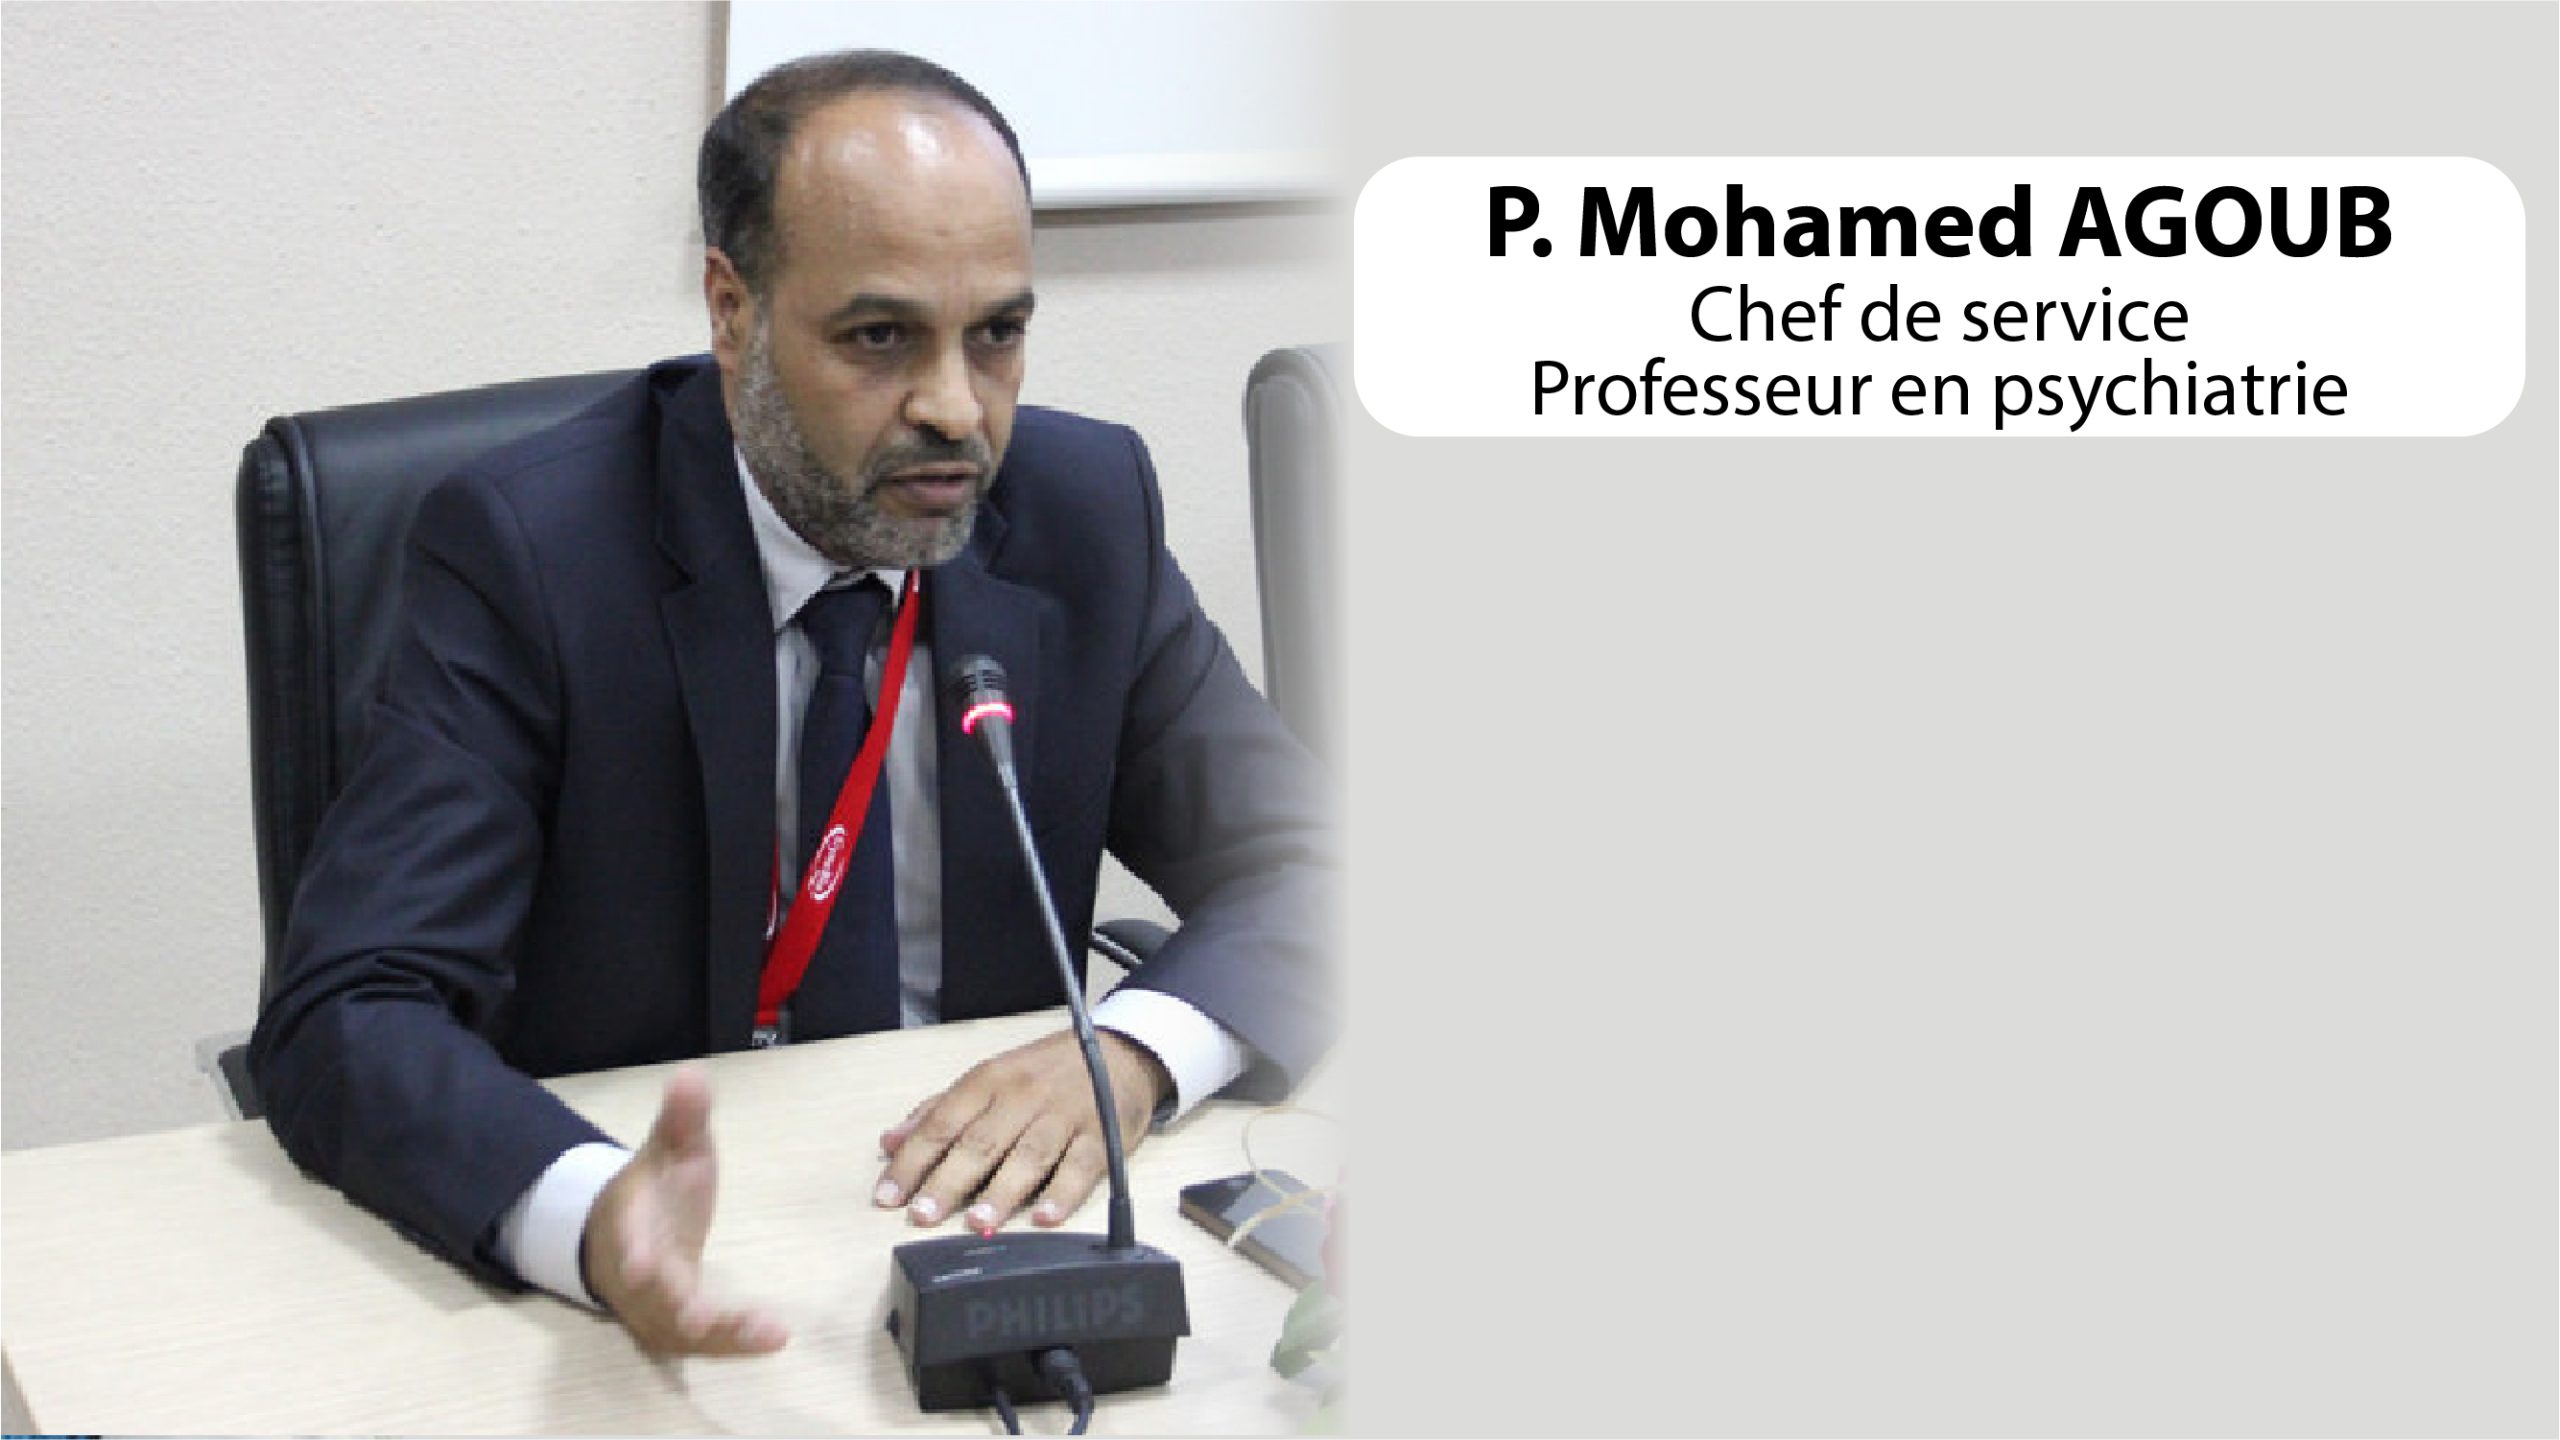 Pr. Mohamed AGOUB – Chef de service au centre psychiatrique universitaire IBN ROCHD de Casablanca